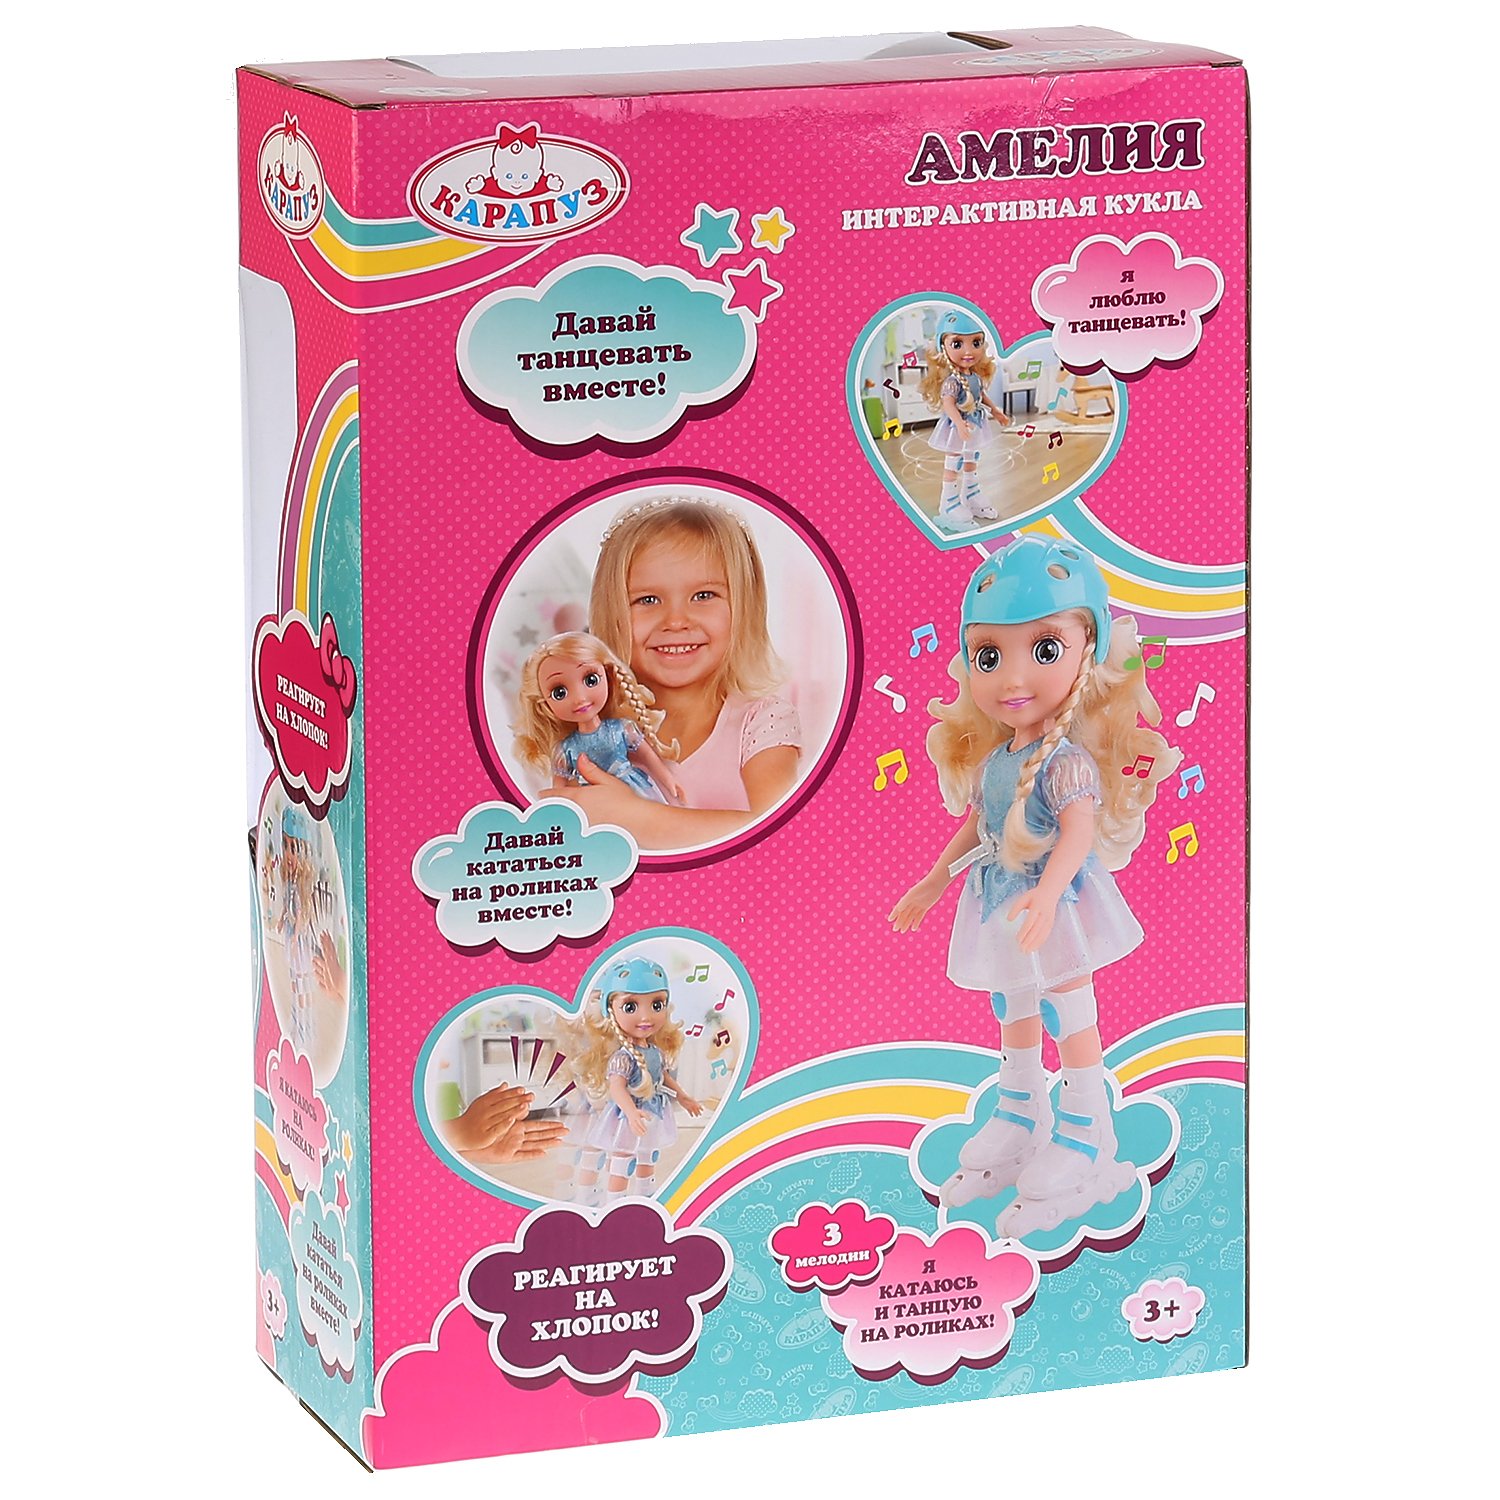 Кукла Карапуз Амелия функциональная 262719